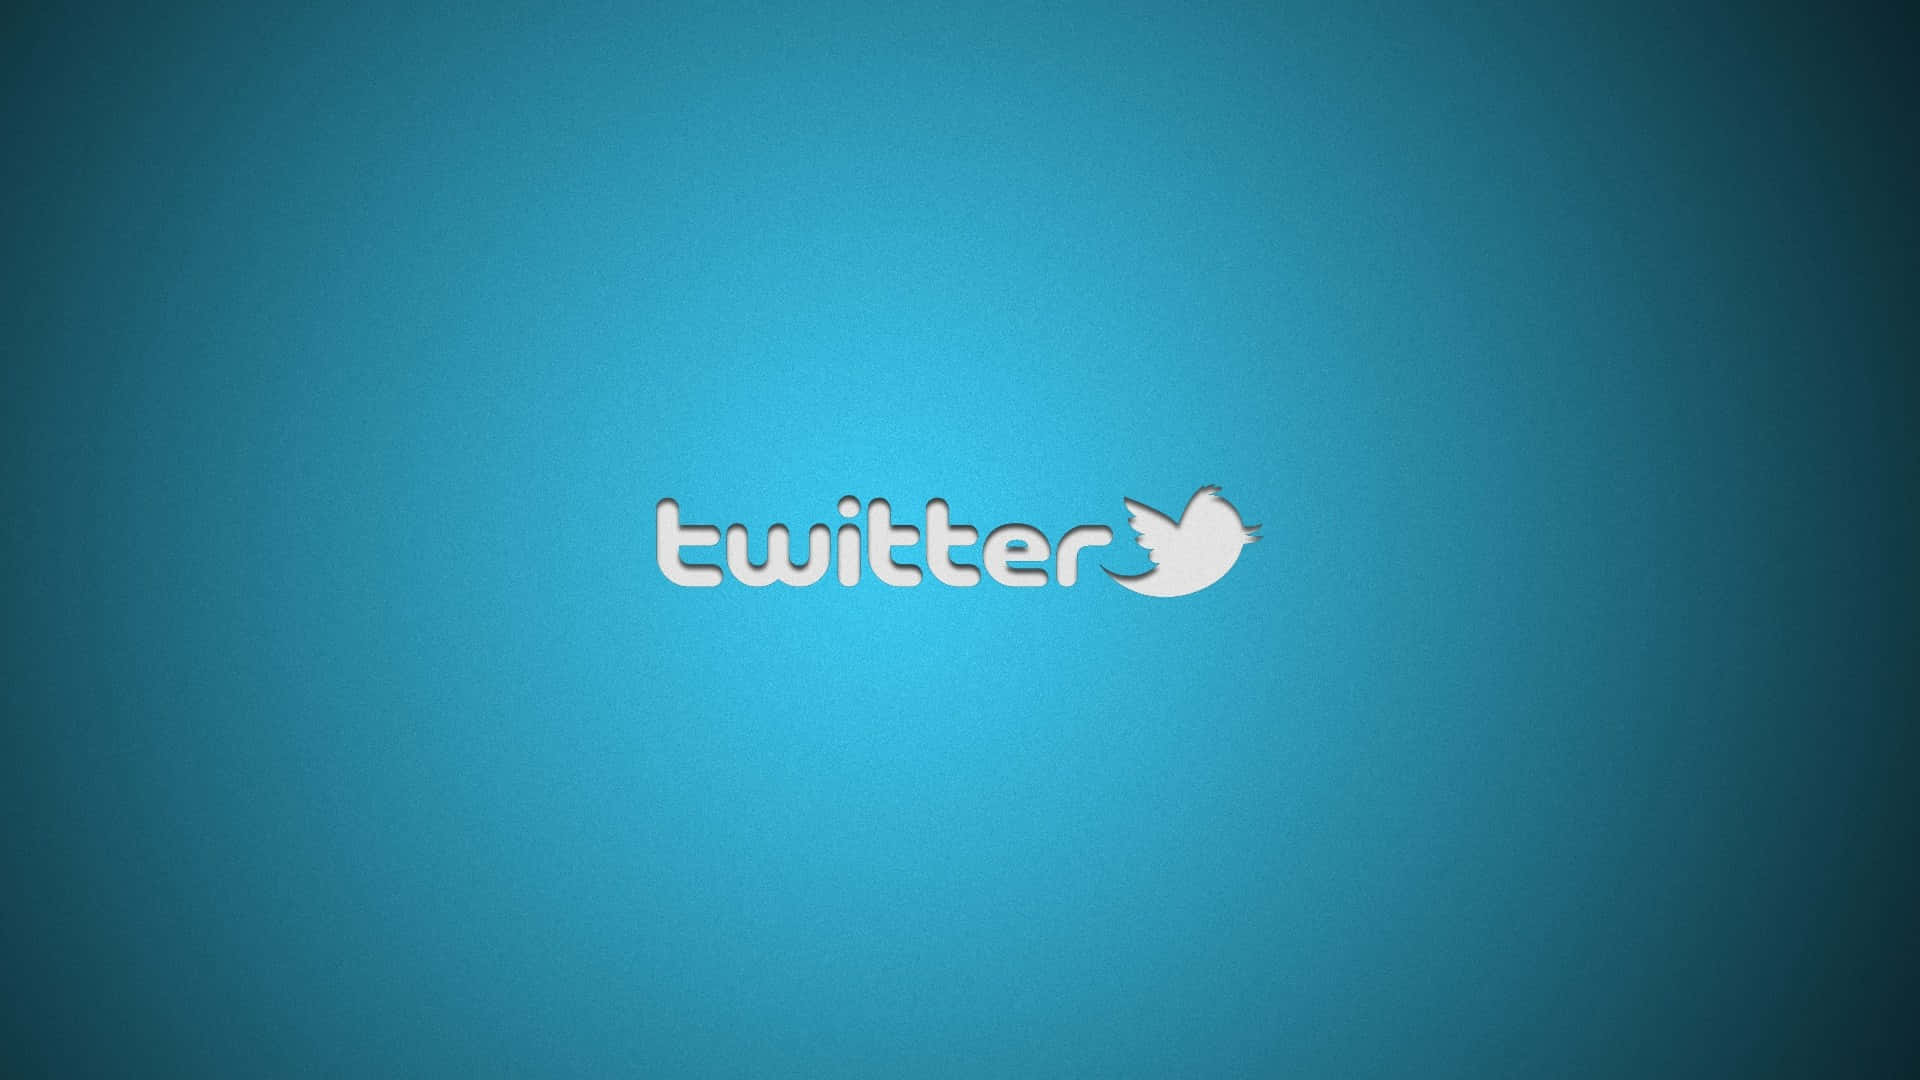 Sfondosociale Con Logo Twitter, Colorazione Azzurro Chiaro, Dimensioni 1920x1080.